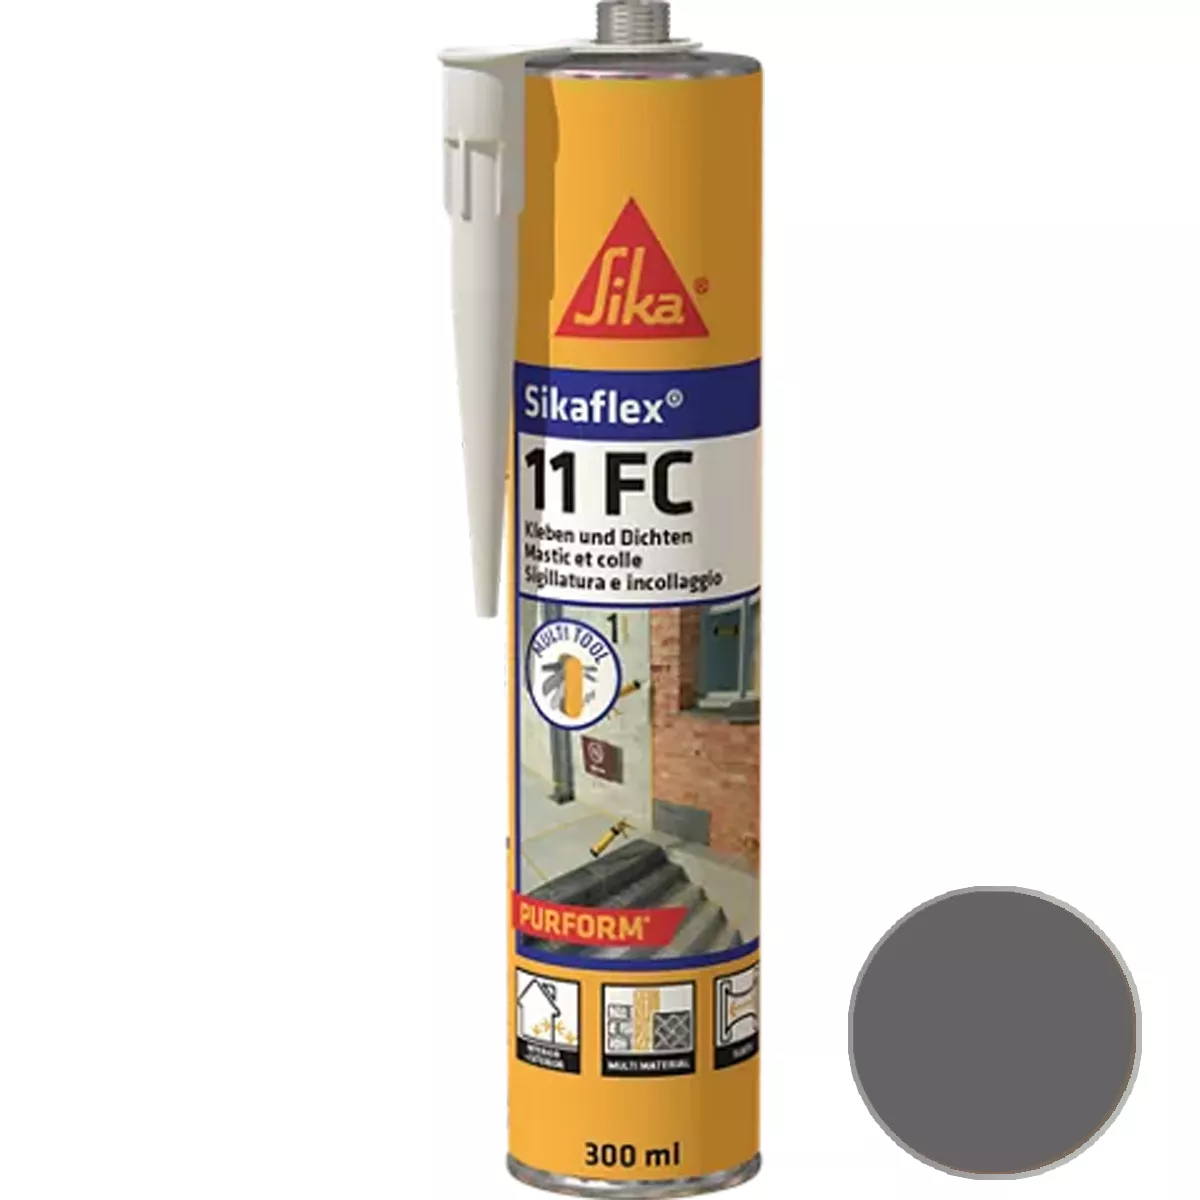 Adesivo e sigillante elastico Sikaflex-11 FC Purform cemento grigio 300 ml